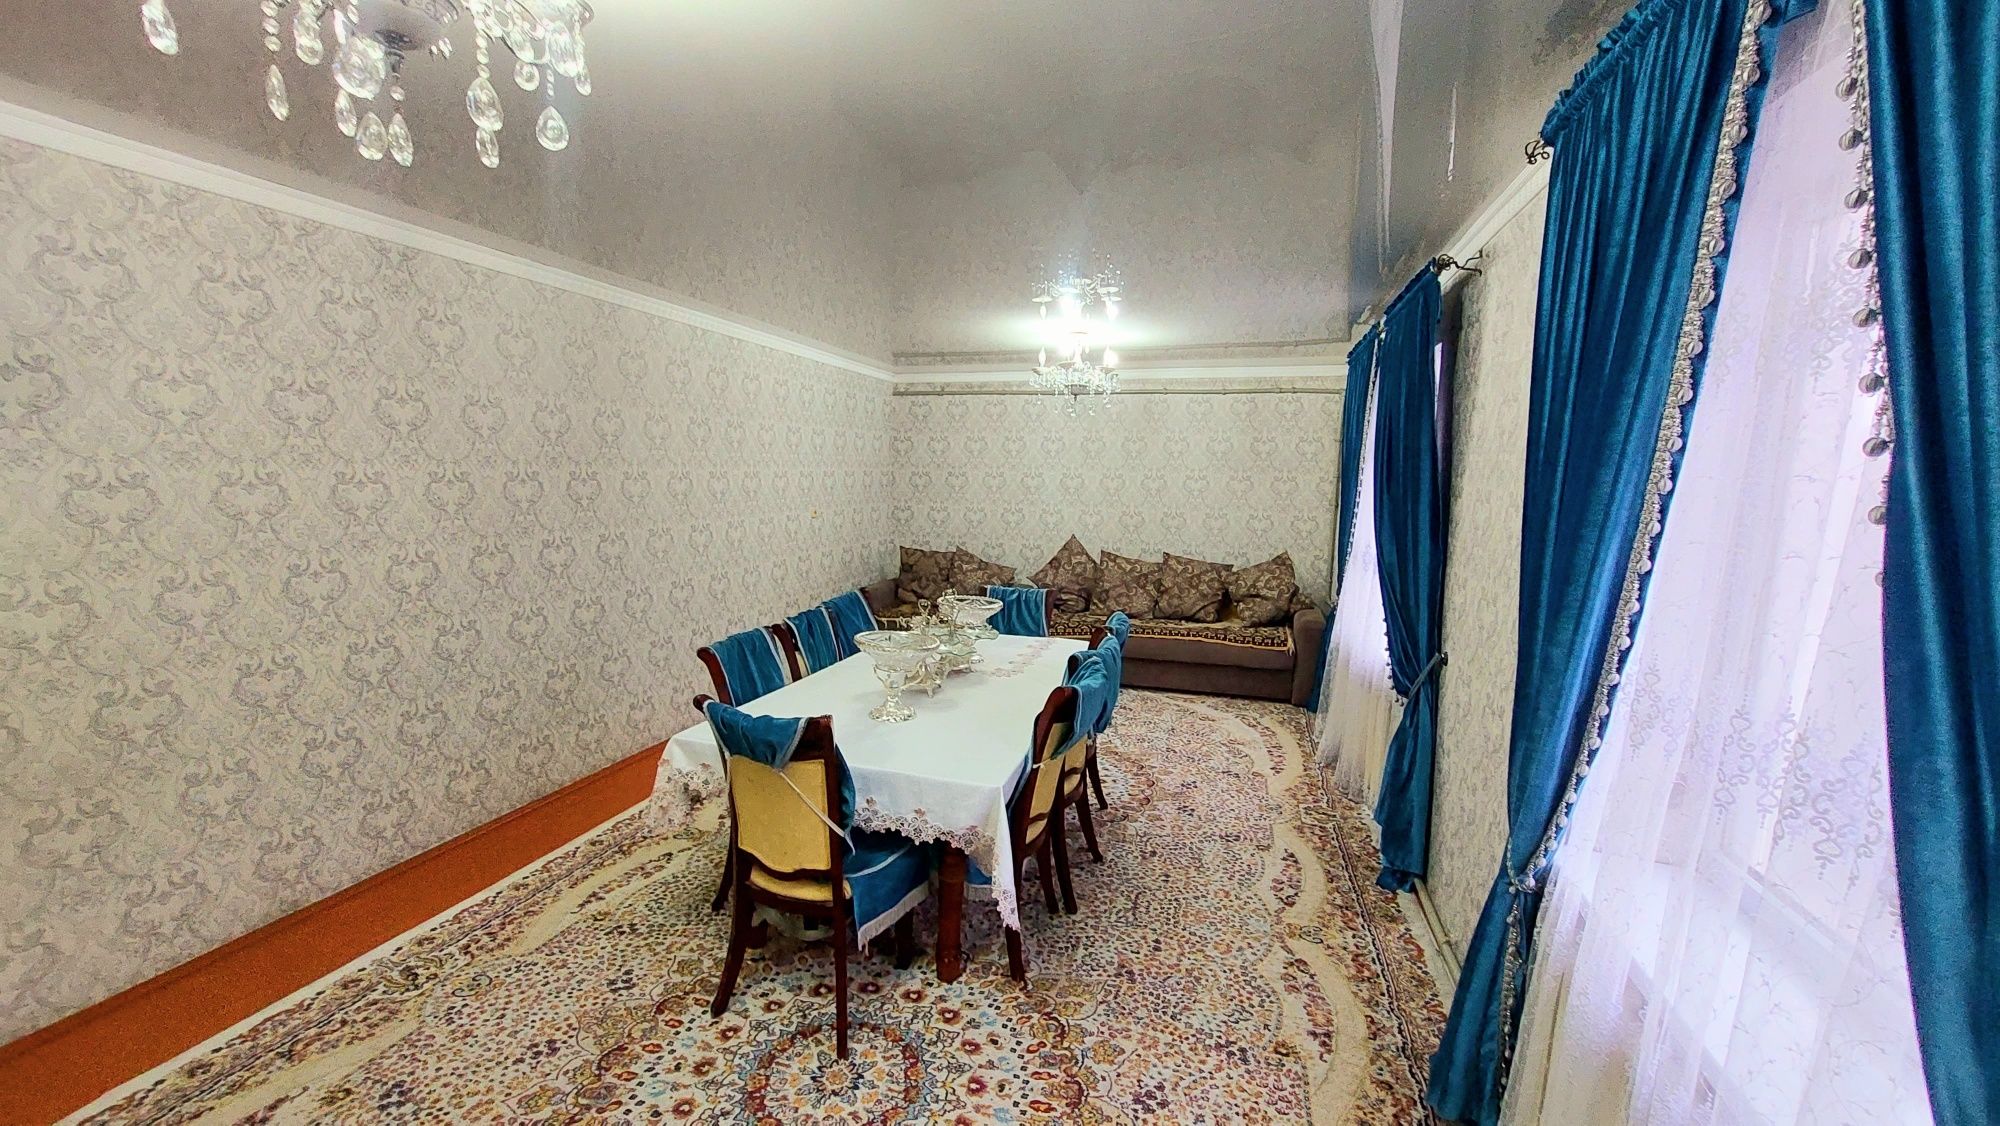 Жилой дом в микрорайоне "Жайлау" по ул.Есиркеп Батыра.